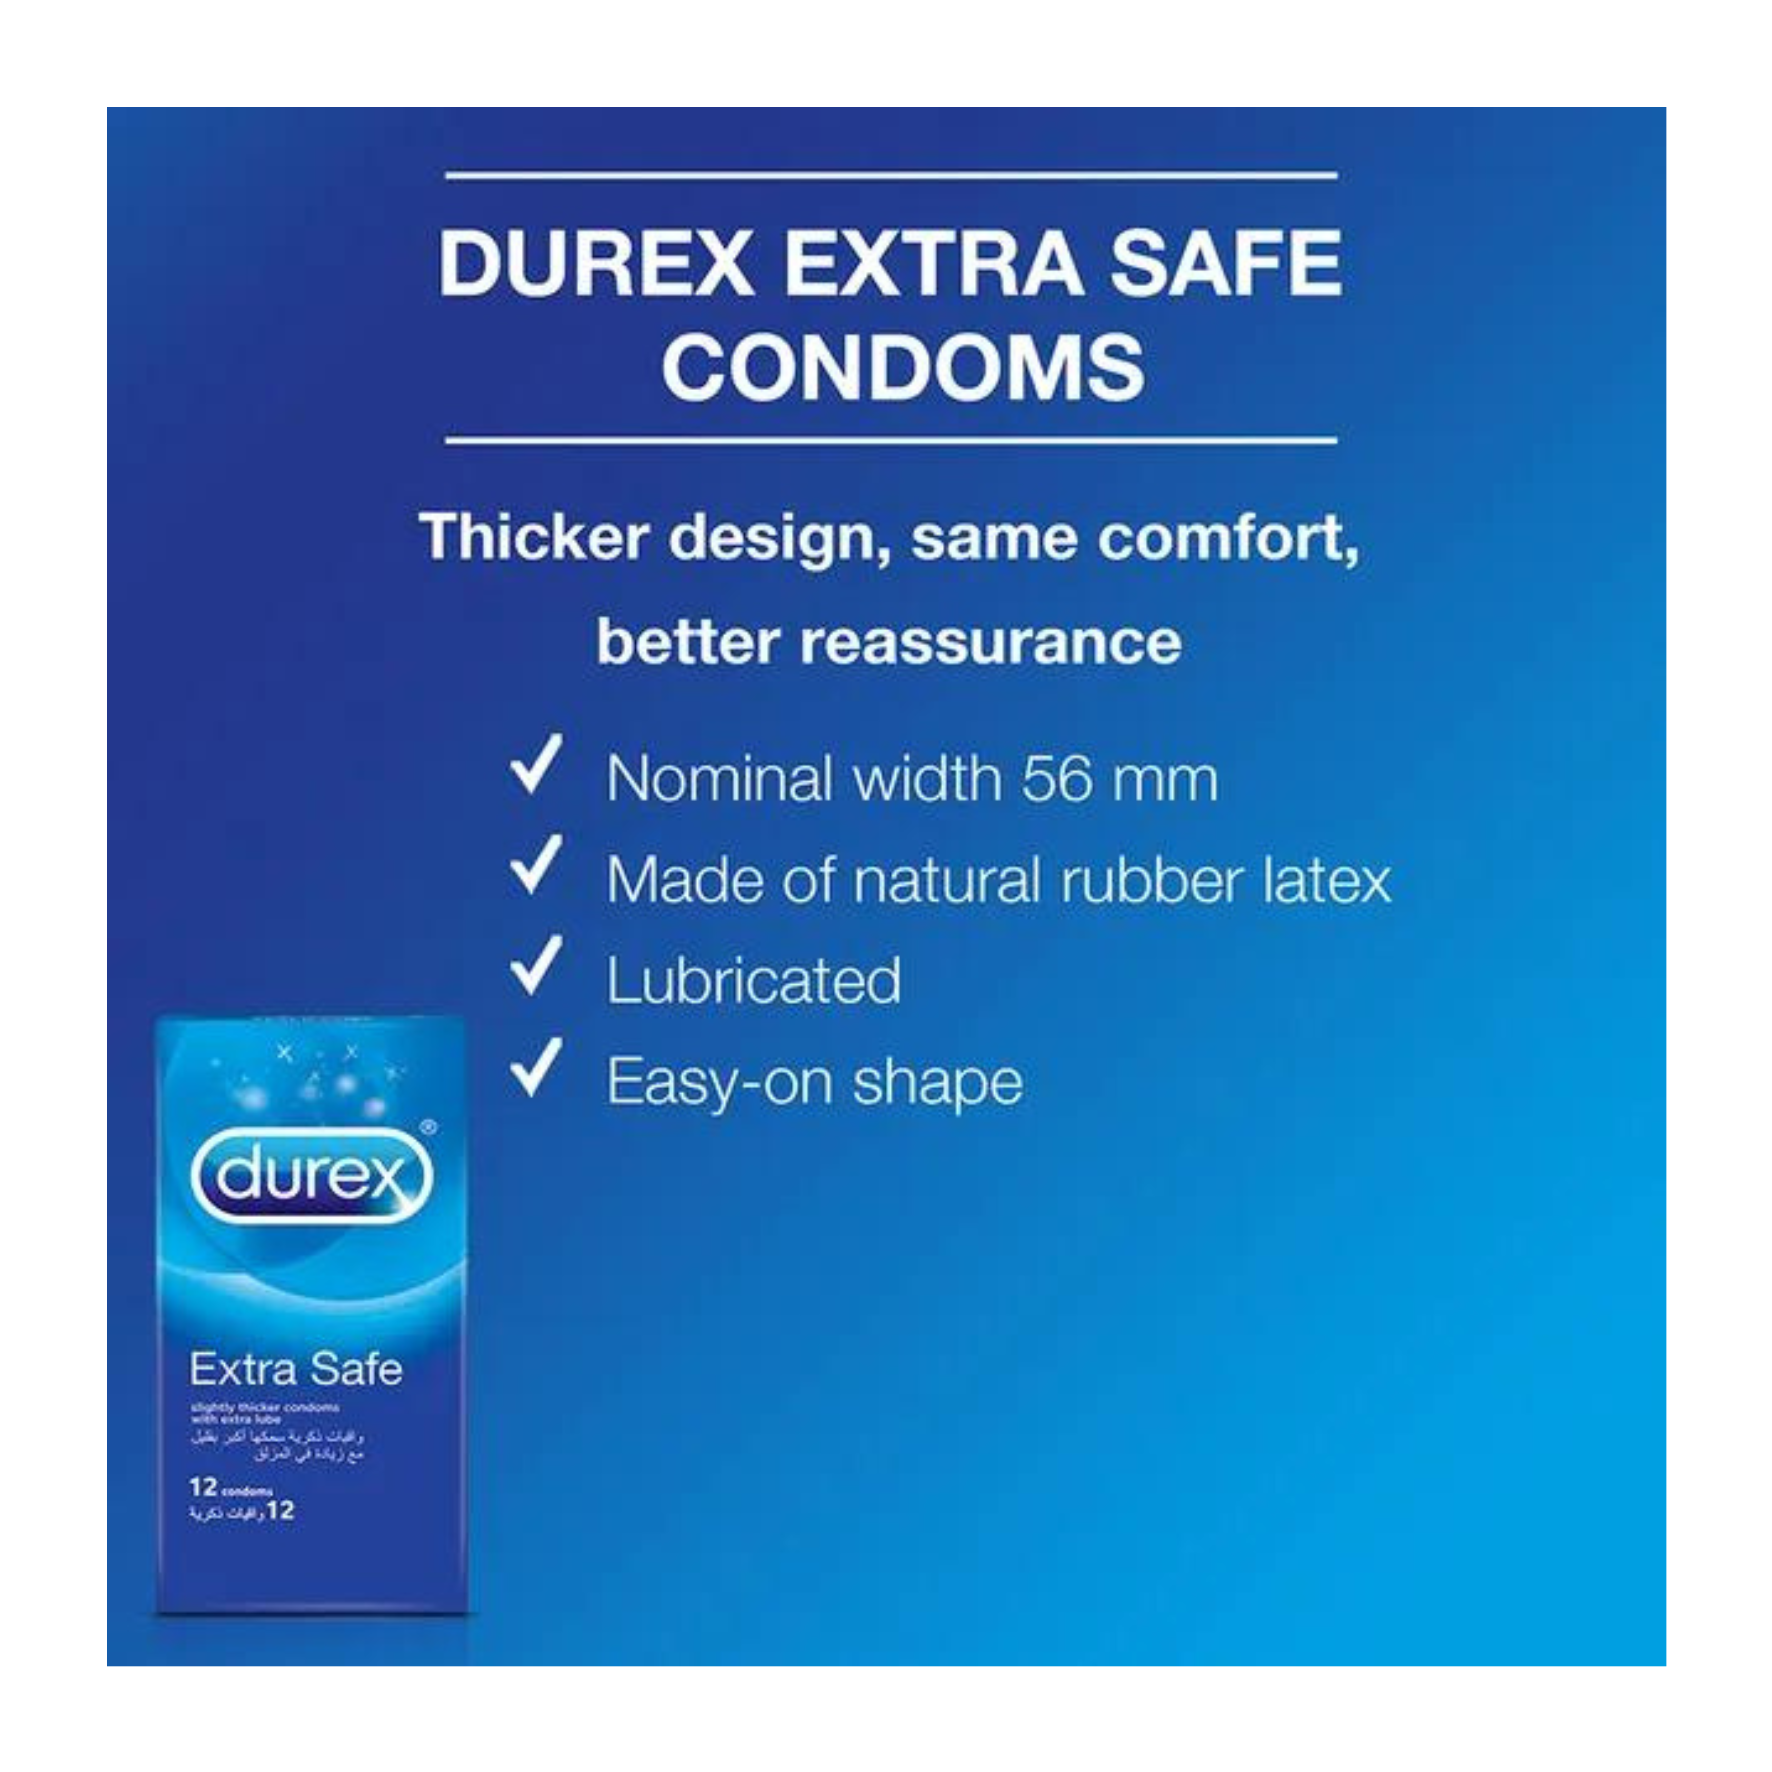 PREZERVATYVAI SUTEIKIANTYS MAKSIMALIĄ APSAUGĄ "DUREX EXTRA SAFE" - 20 VNT.  
"Durex Extra Safe" tai  skaidrūs ir lubrikuoti  prezervatyvai skirti  saugiai ir jausmingai patirčiai.  
  
Šie prezervatyvai sukurti iš šiek tiek storesnio latekso ir papildomai lubrikuoti, tad  seksas bus malonus bei saugus.  
Prieš užsidėdami prezervatyvą įsitikinkite, kad jūsų varpa neliečia partnerio lytinių organų srities – sperma iš varpos gali išeiti dar prieš pilną ejakuliaciją.   
*Atminkite, kad nė viena kontraceptinė priemonė nėra 100 % veiksminga nuo nėštumo, ŽIV ar lytiškai plintančių infekcijų.